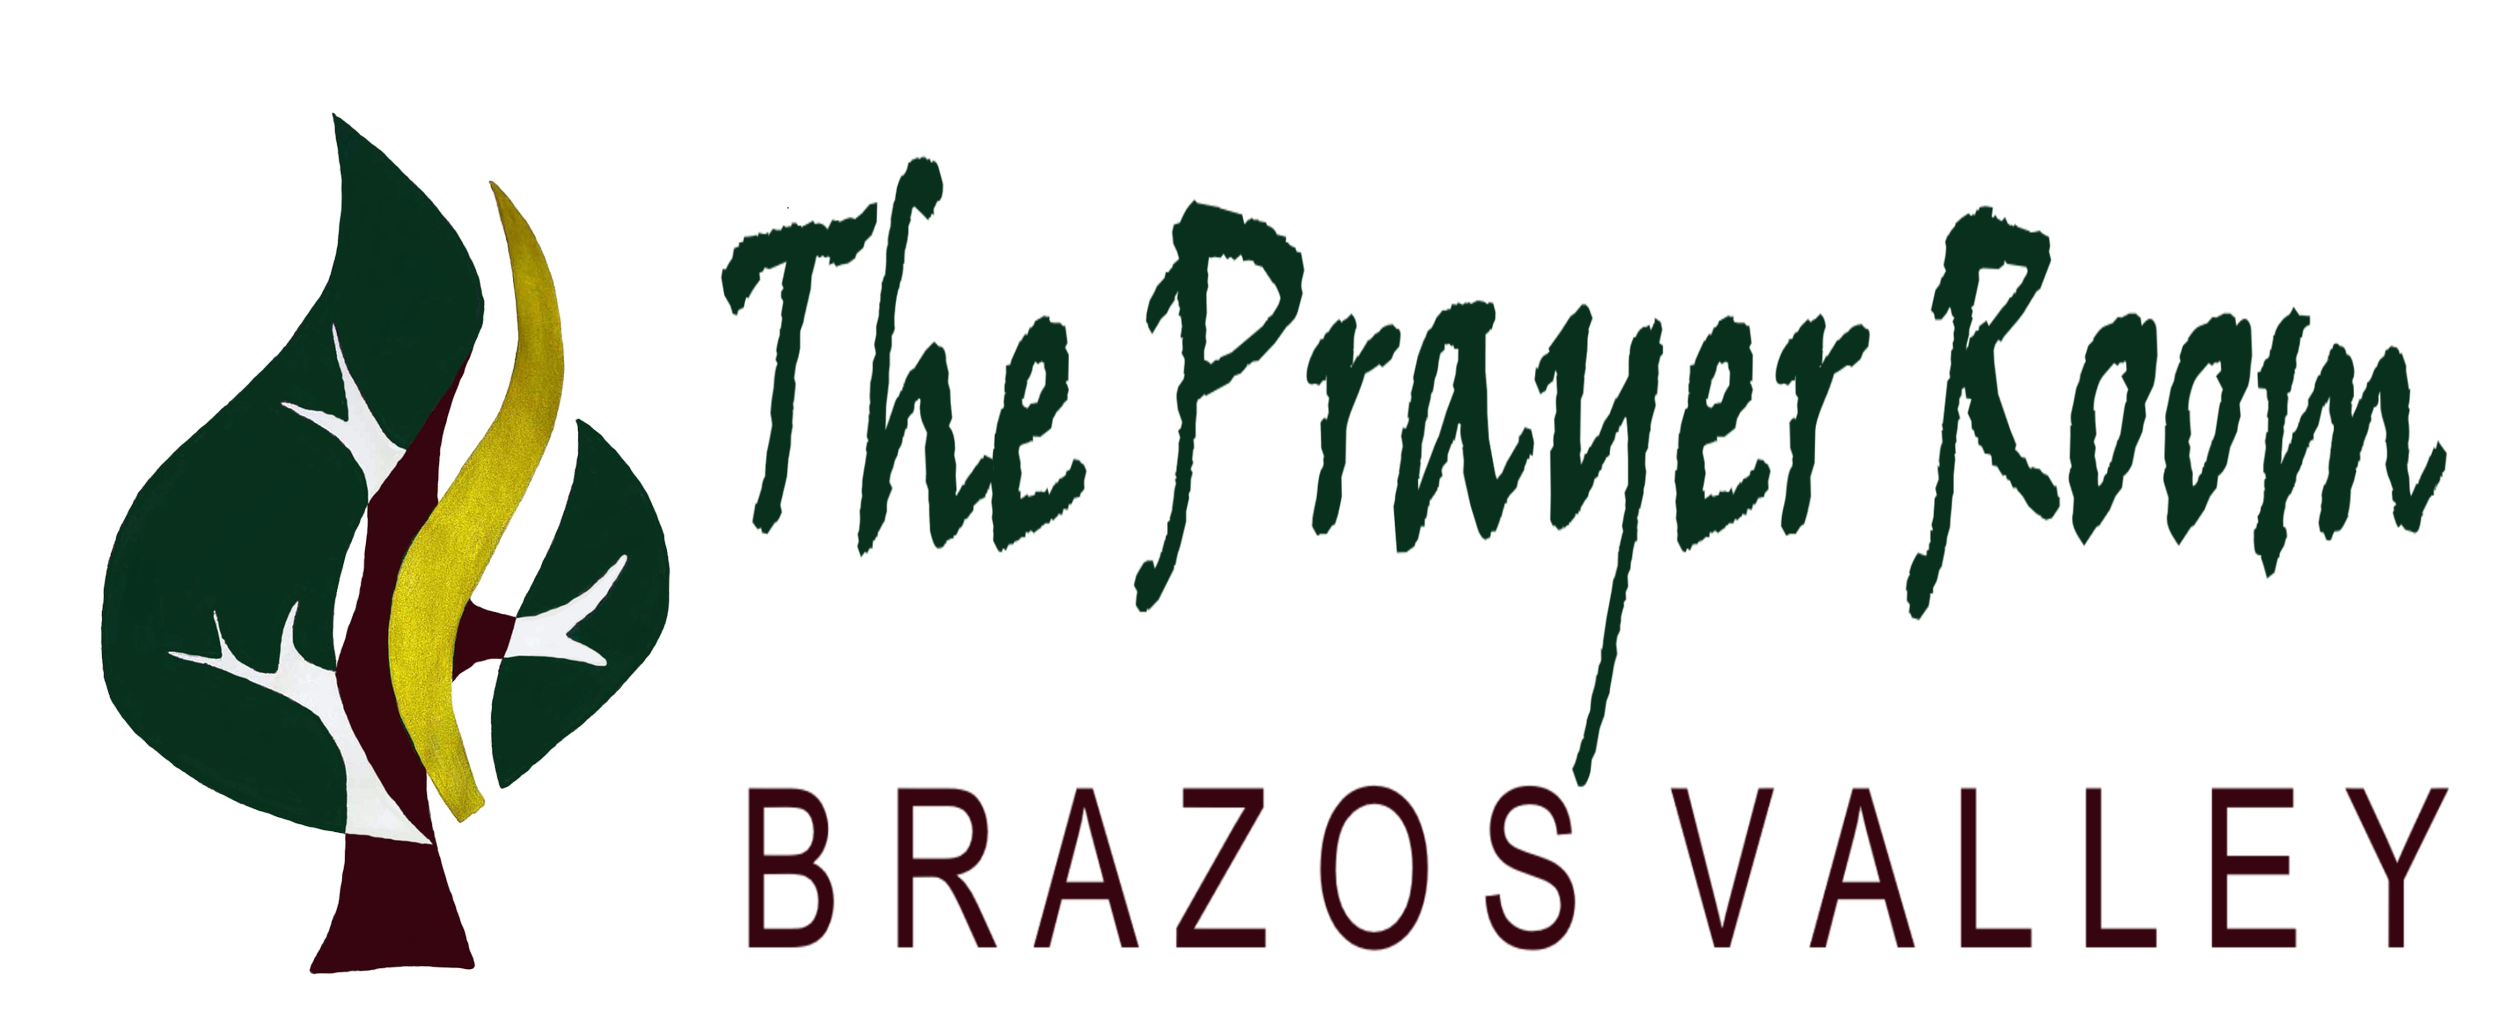 The Prayer Room - Brazos Valley